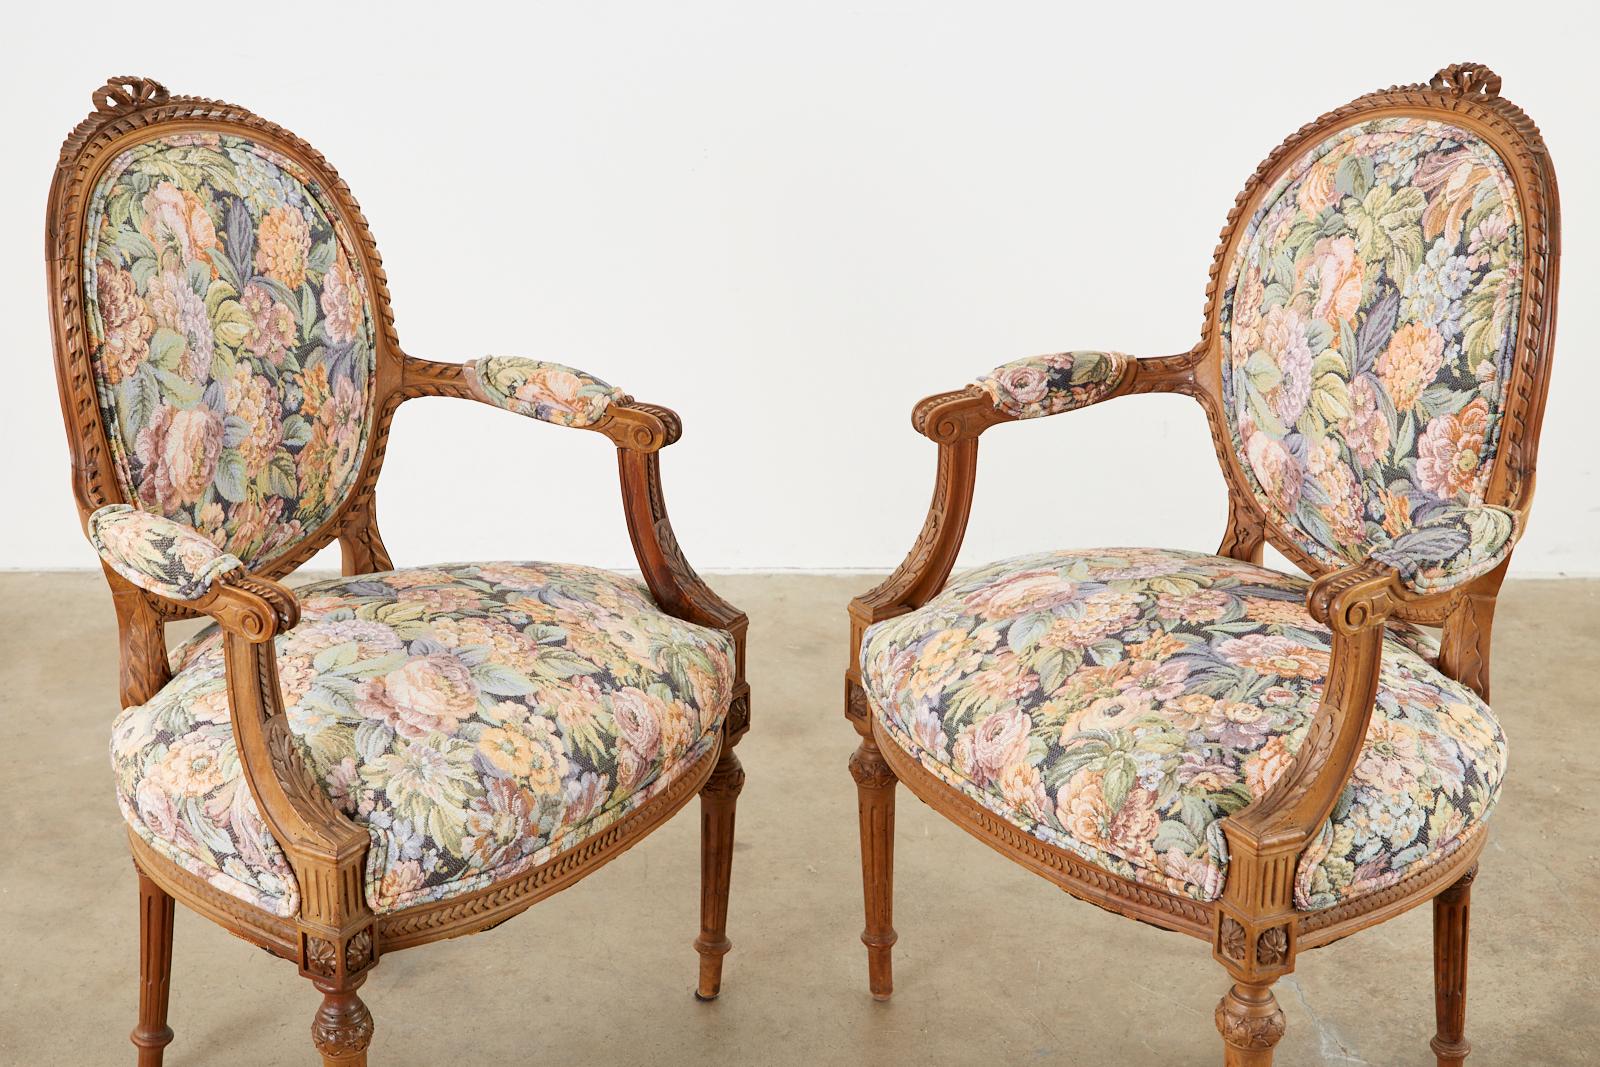 Impressionnante paire de fauteuils français sculptés dans le goût Louis XVI. Les chaises présentent des cadres minutieusement sculptés à la main avec des motifs de corde, des rosettes, des acanthes et des crêtes en forme de nœud de ruban sur le